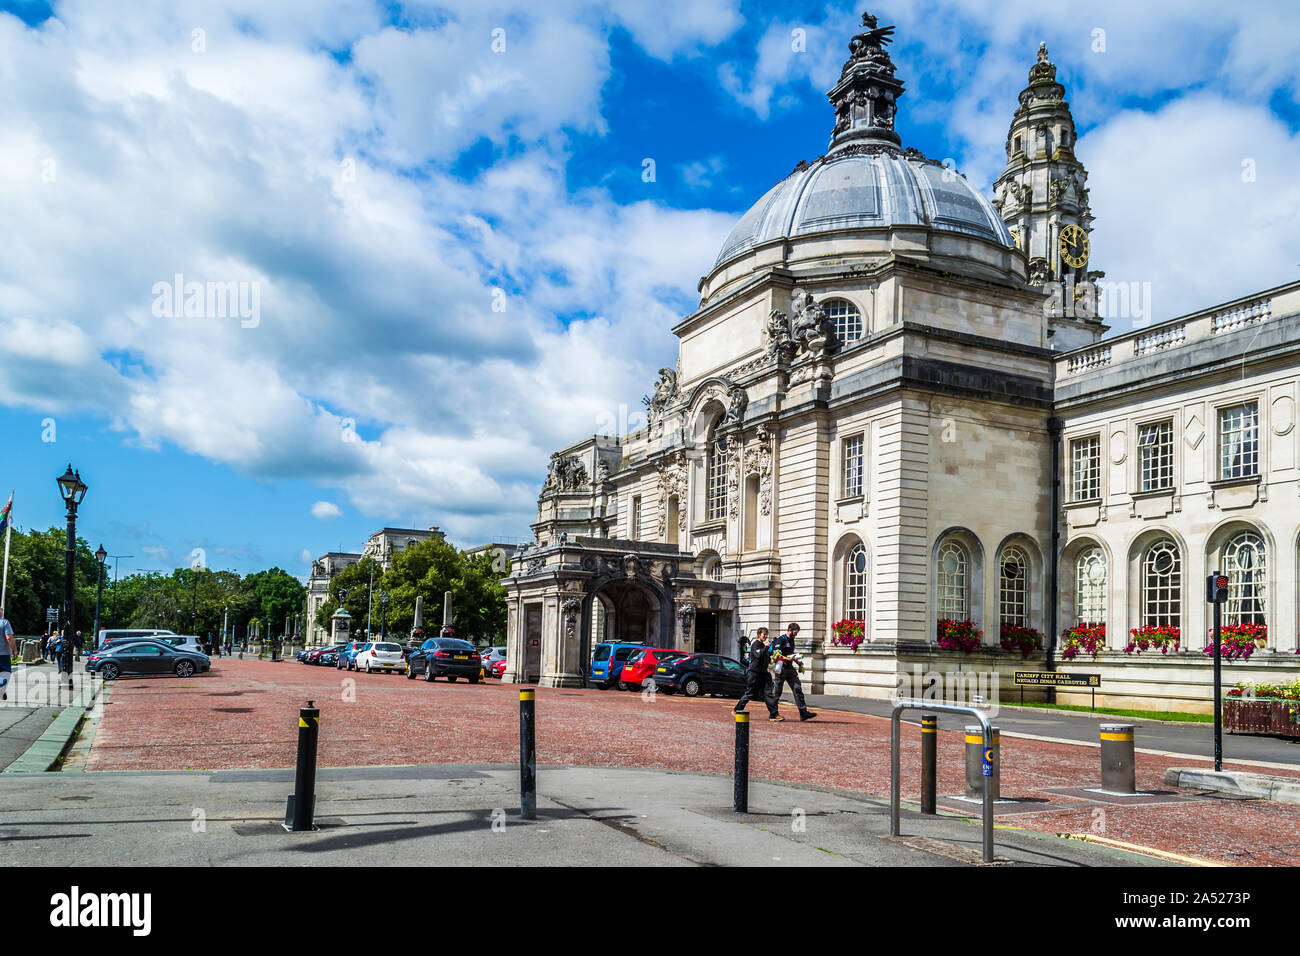 Rues et l'architecture de la ville de Cardiff, Pays de Galles. Banque D'Images